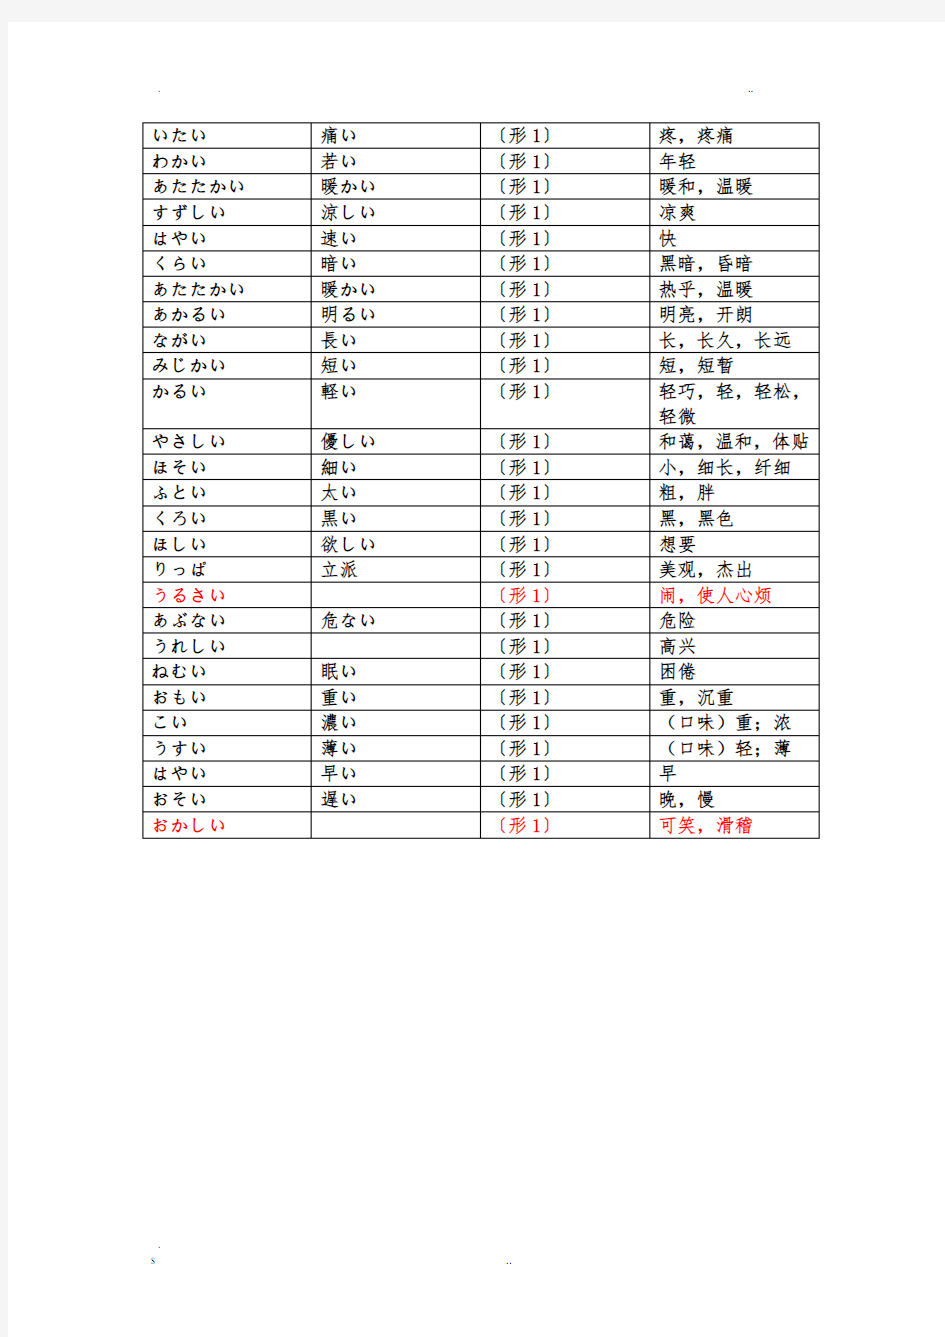 日语形容词分类表